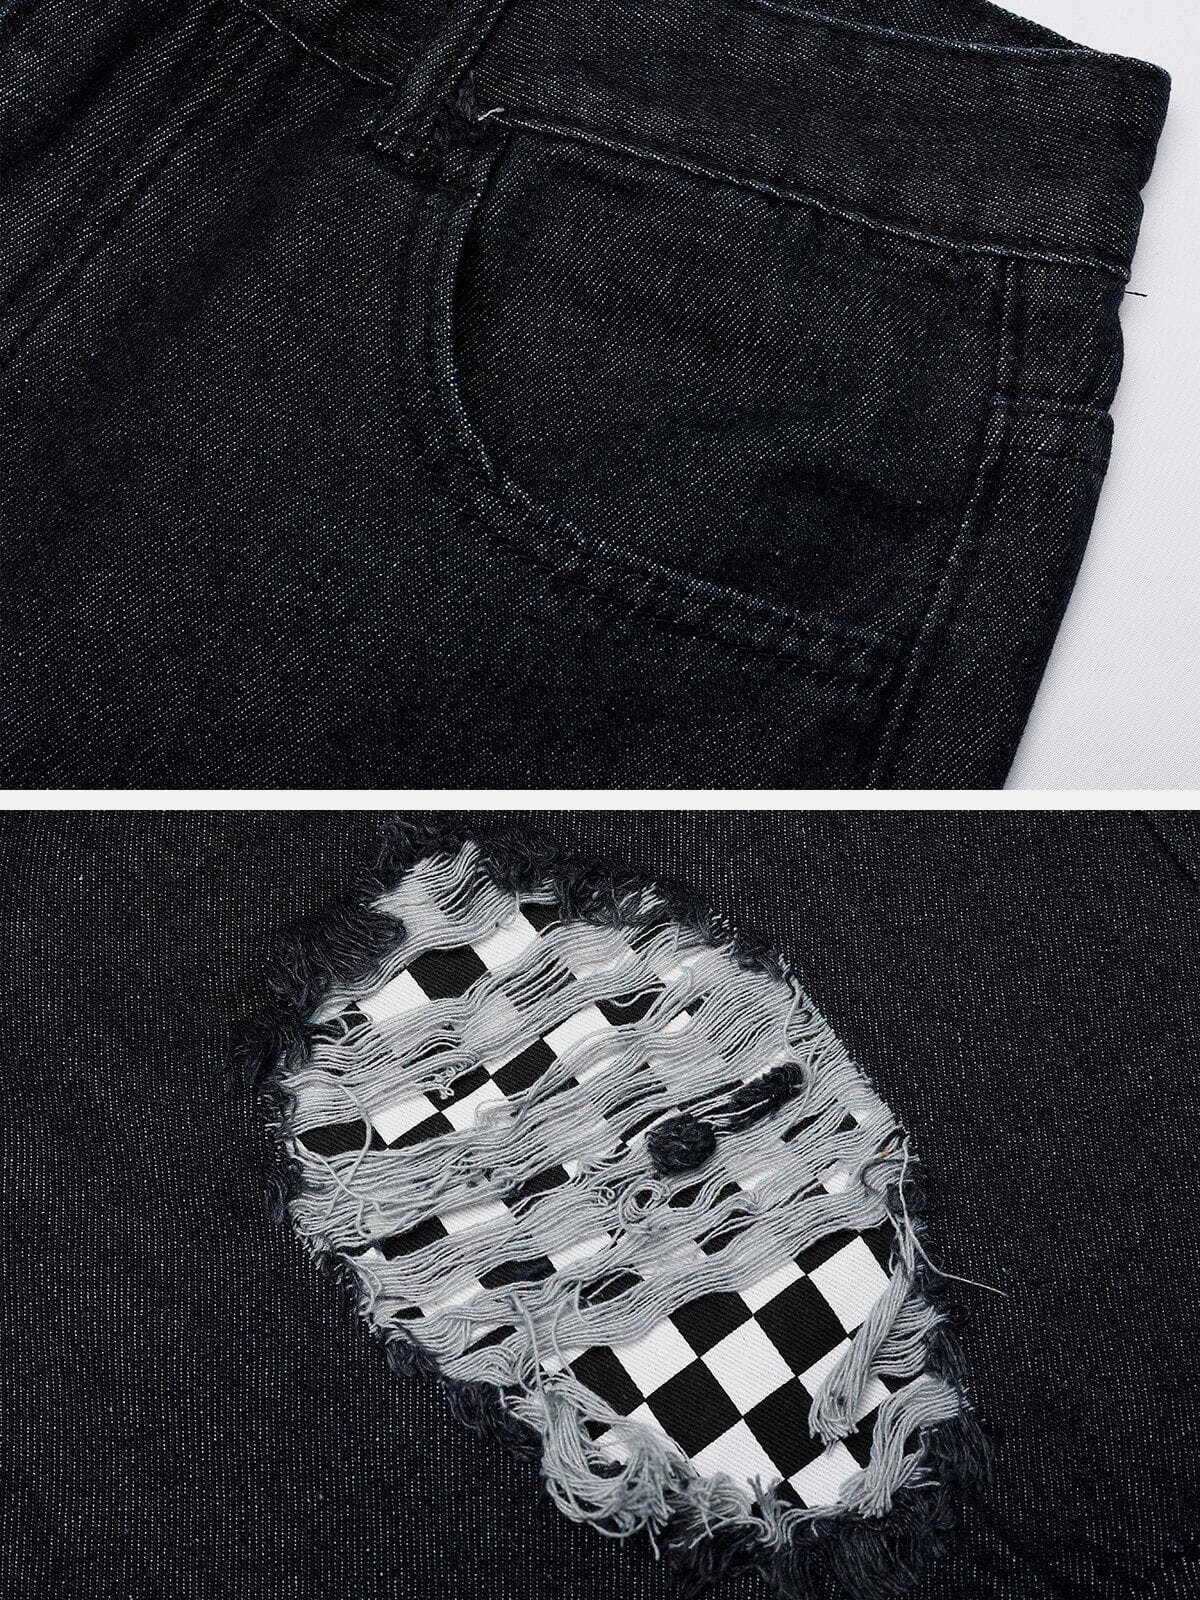 shredded checkerboard denim shorts edgy streetwear essential 3620